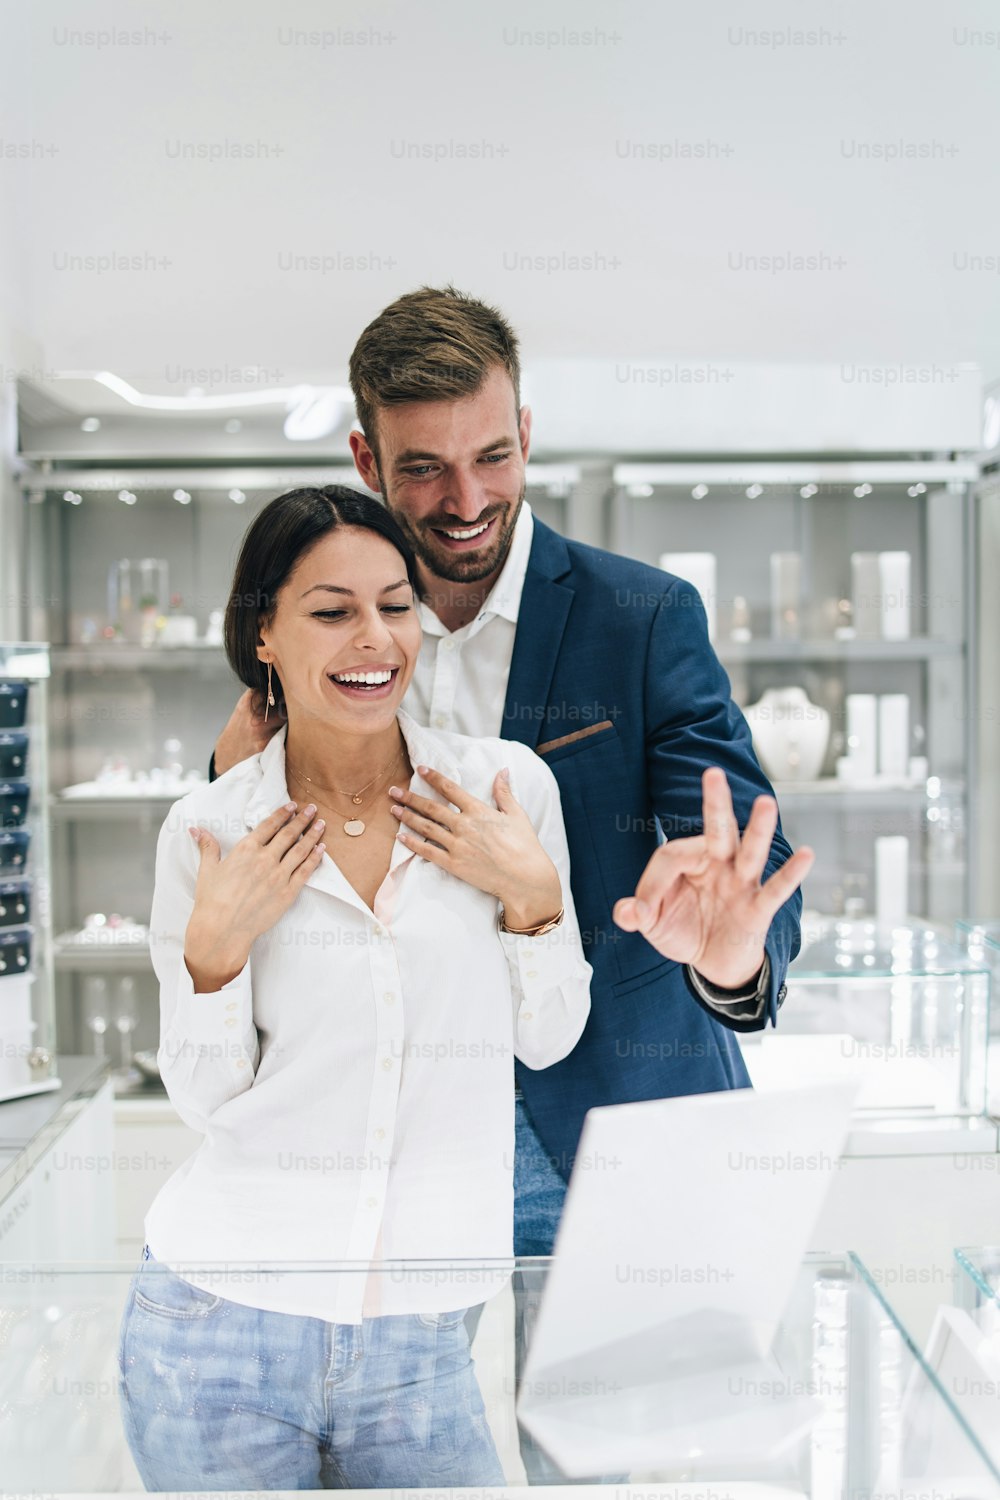 Bella coppia che si diverte a fare shopping in una gioielleria moderna. Giovane donna prova splendida collana e orecchini.